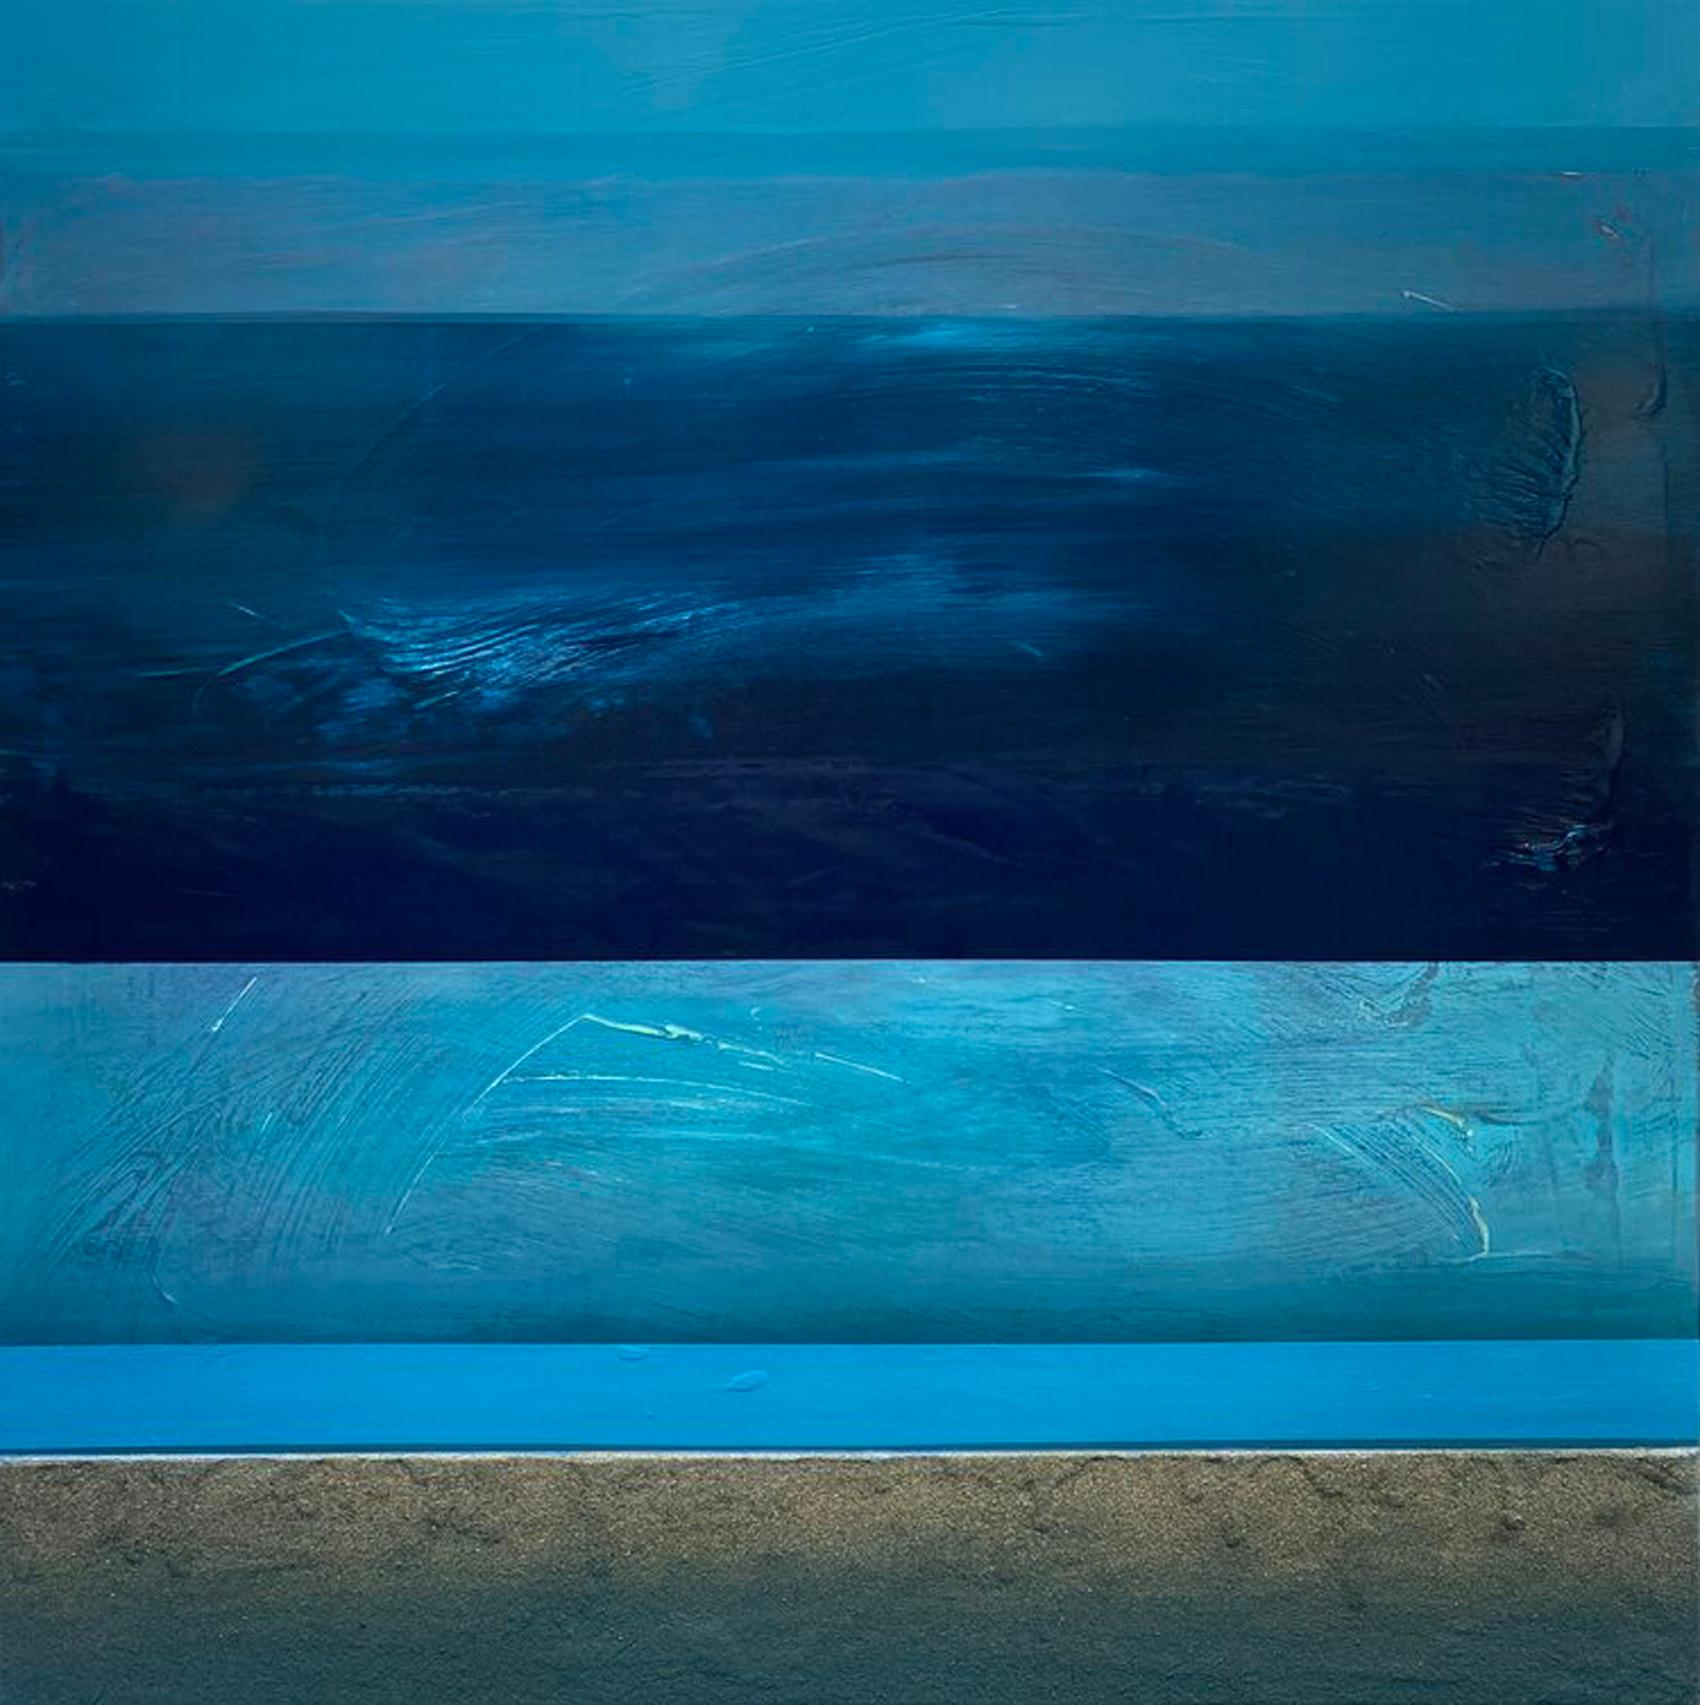 Landscape Painting Katheryn Holt - « Deep Blue Beach » - Paysage marin abstrait contemporain - Technique mixte océanique 